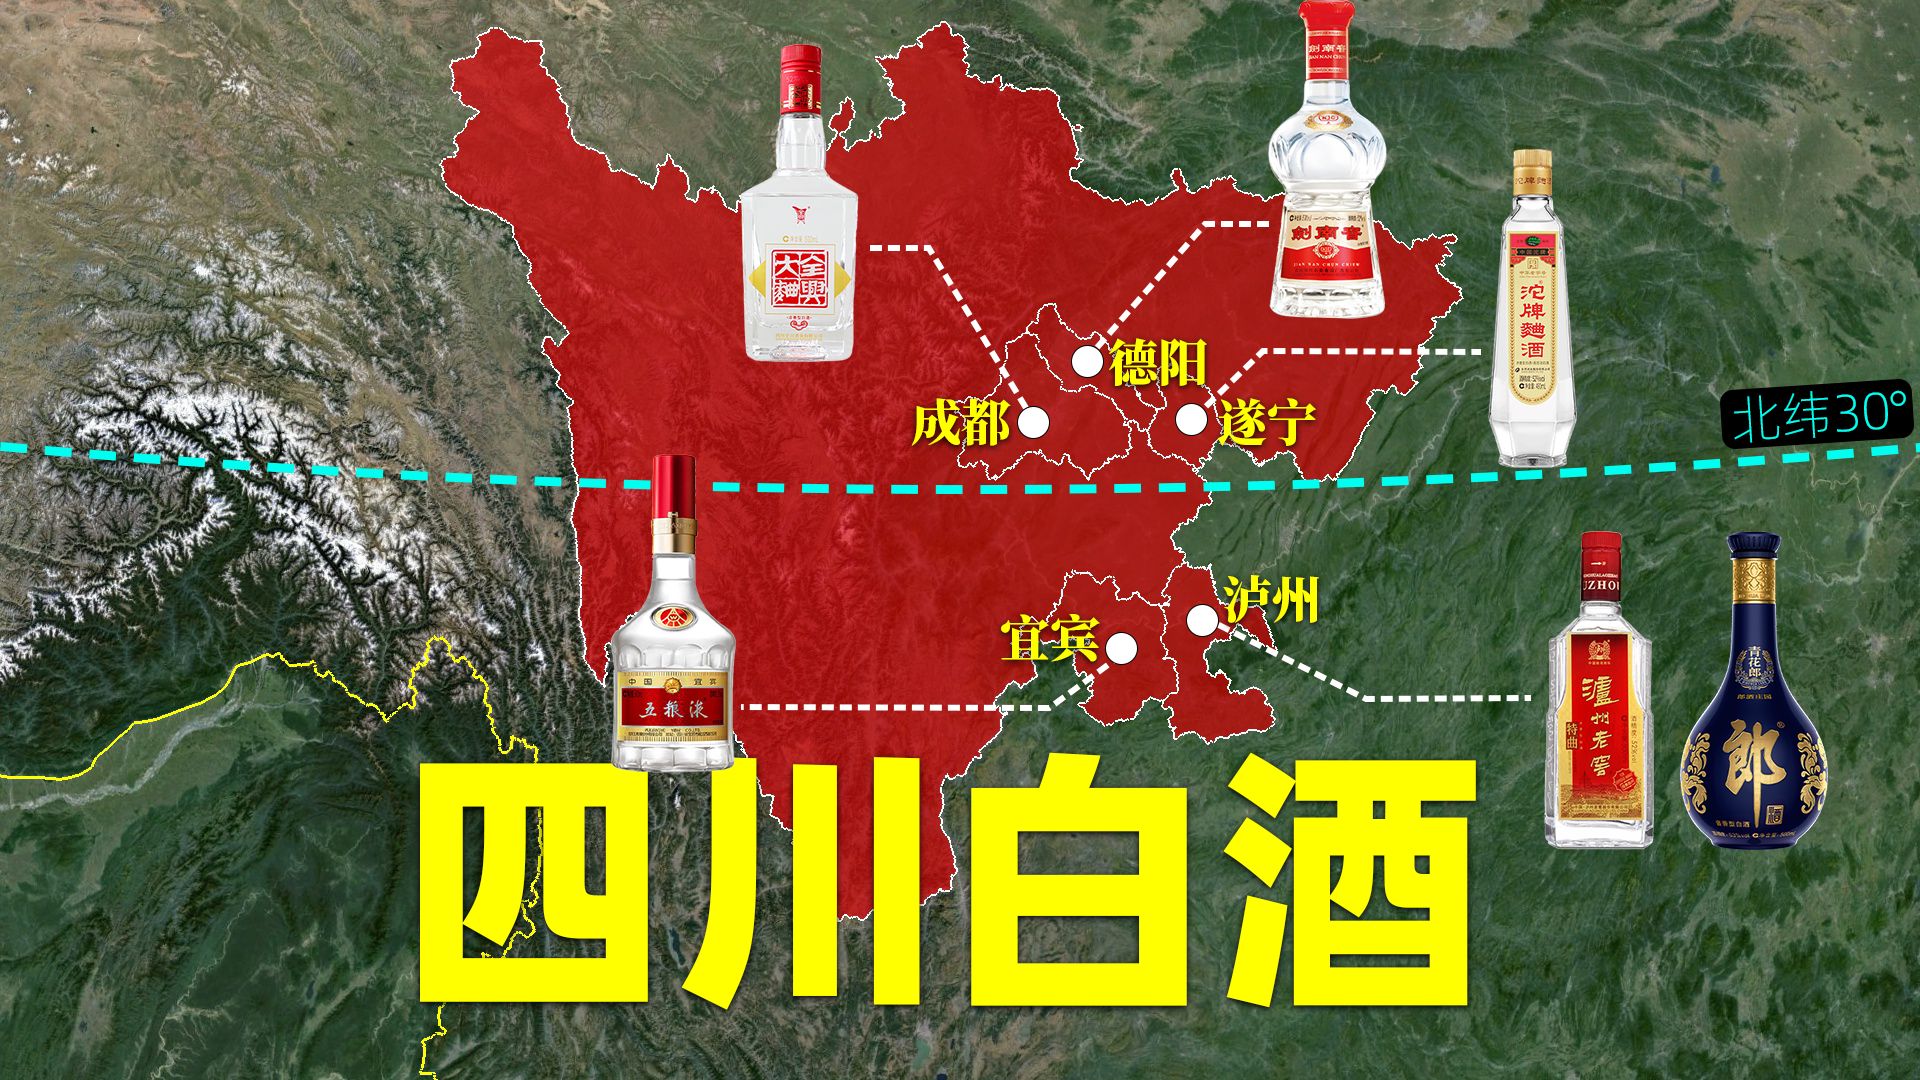 中国白酒看四川，四川白酒看川南，川南白酒有何特别之处？